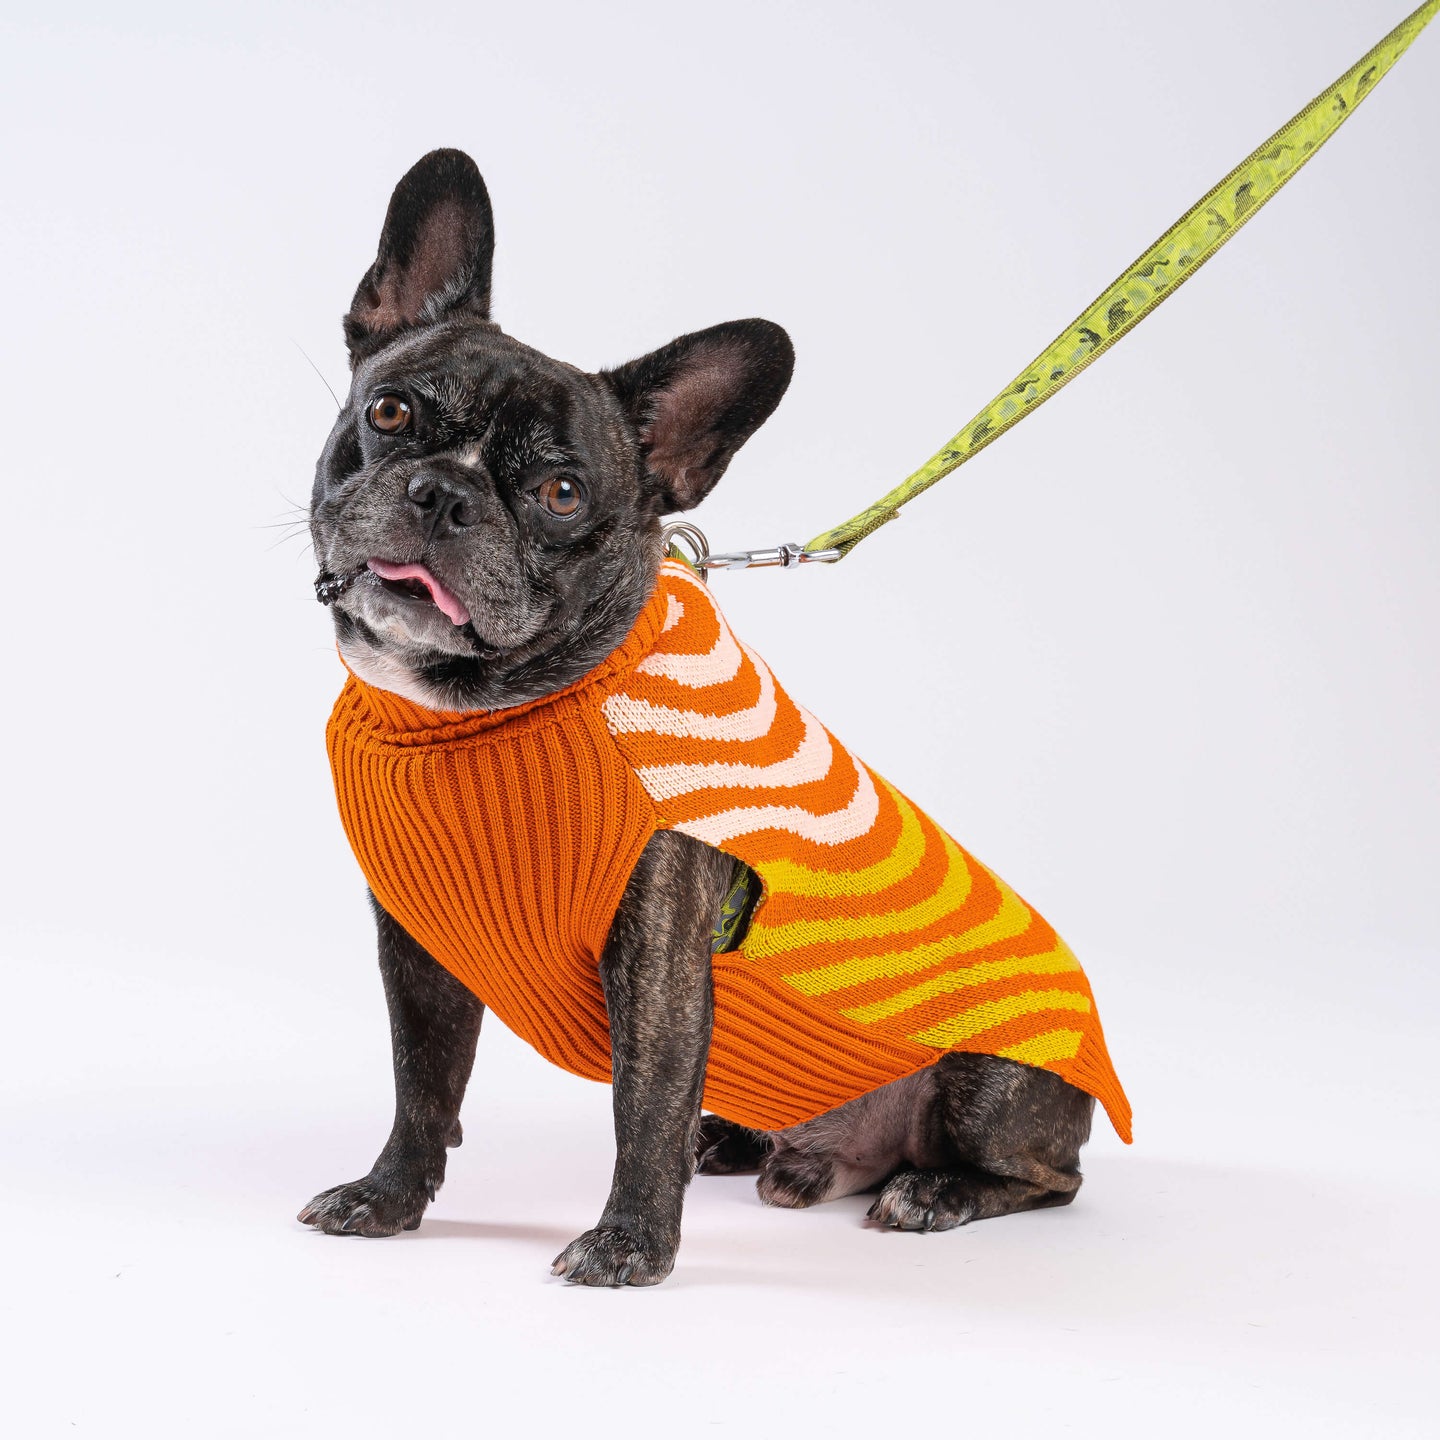 Sound Wave Dog Knit Sweater On Dog 